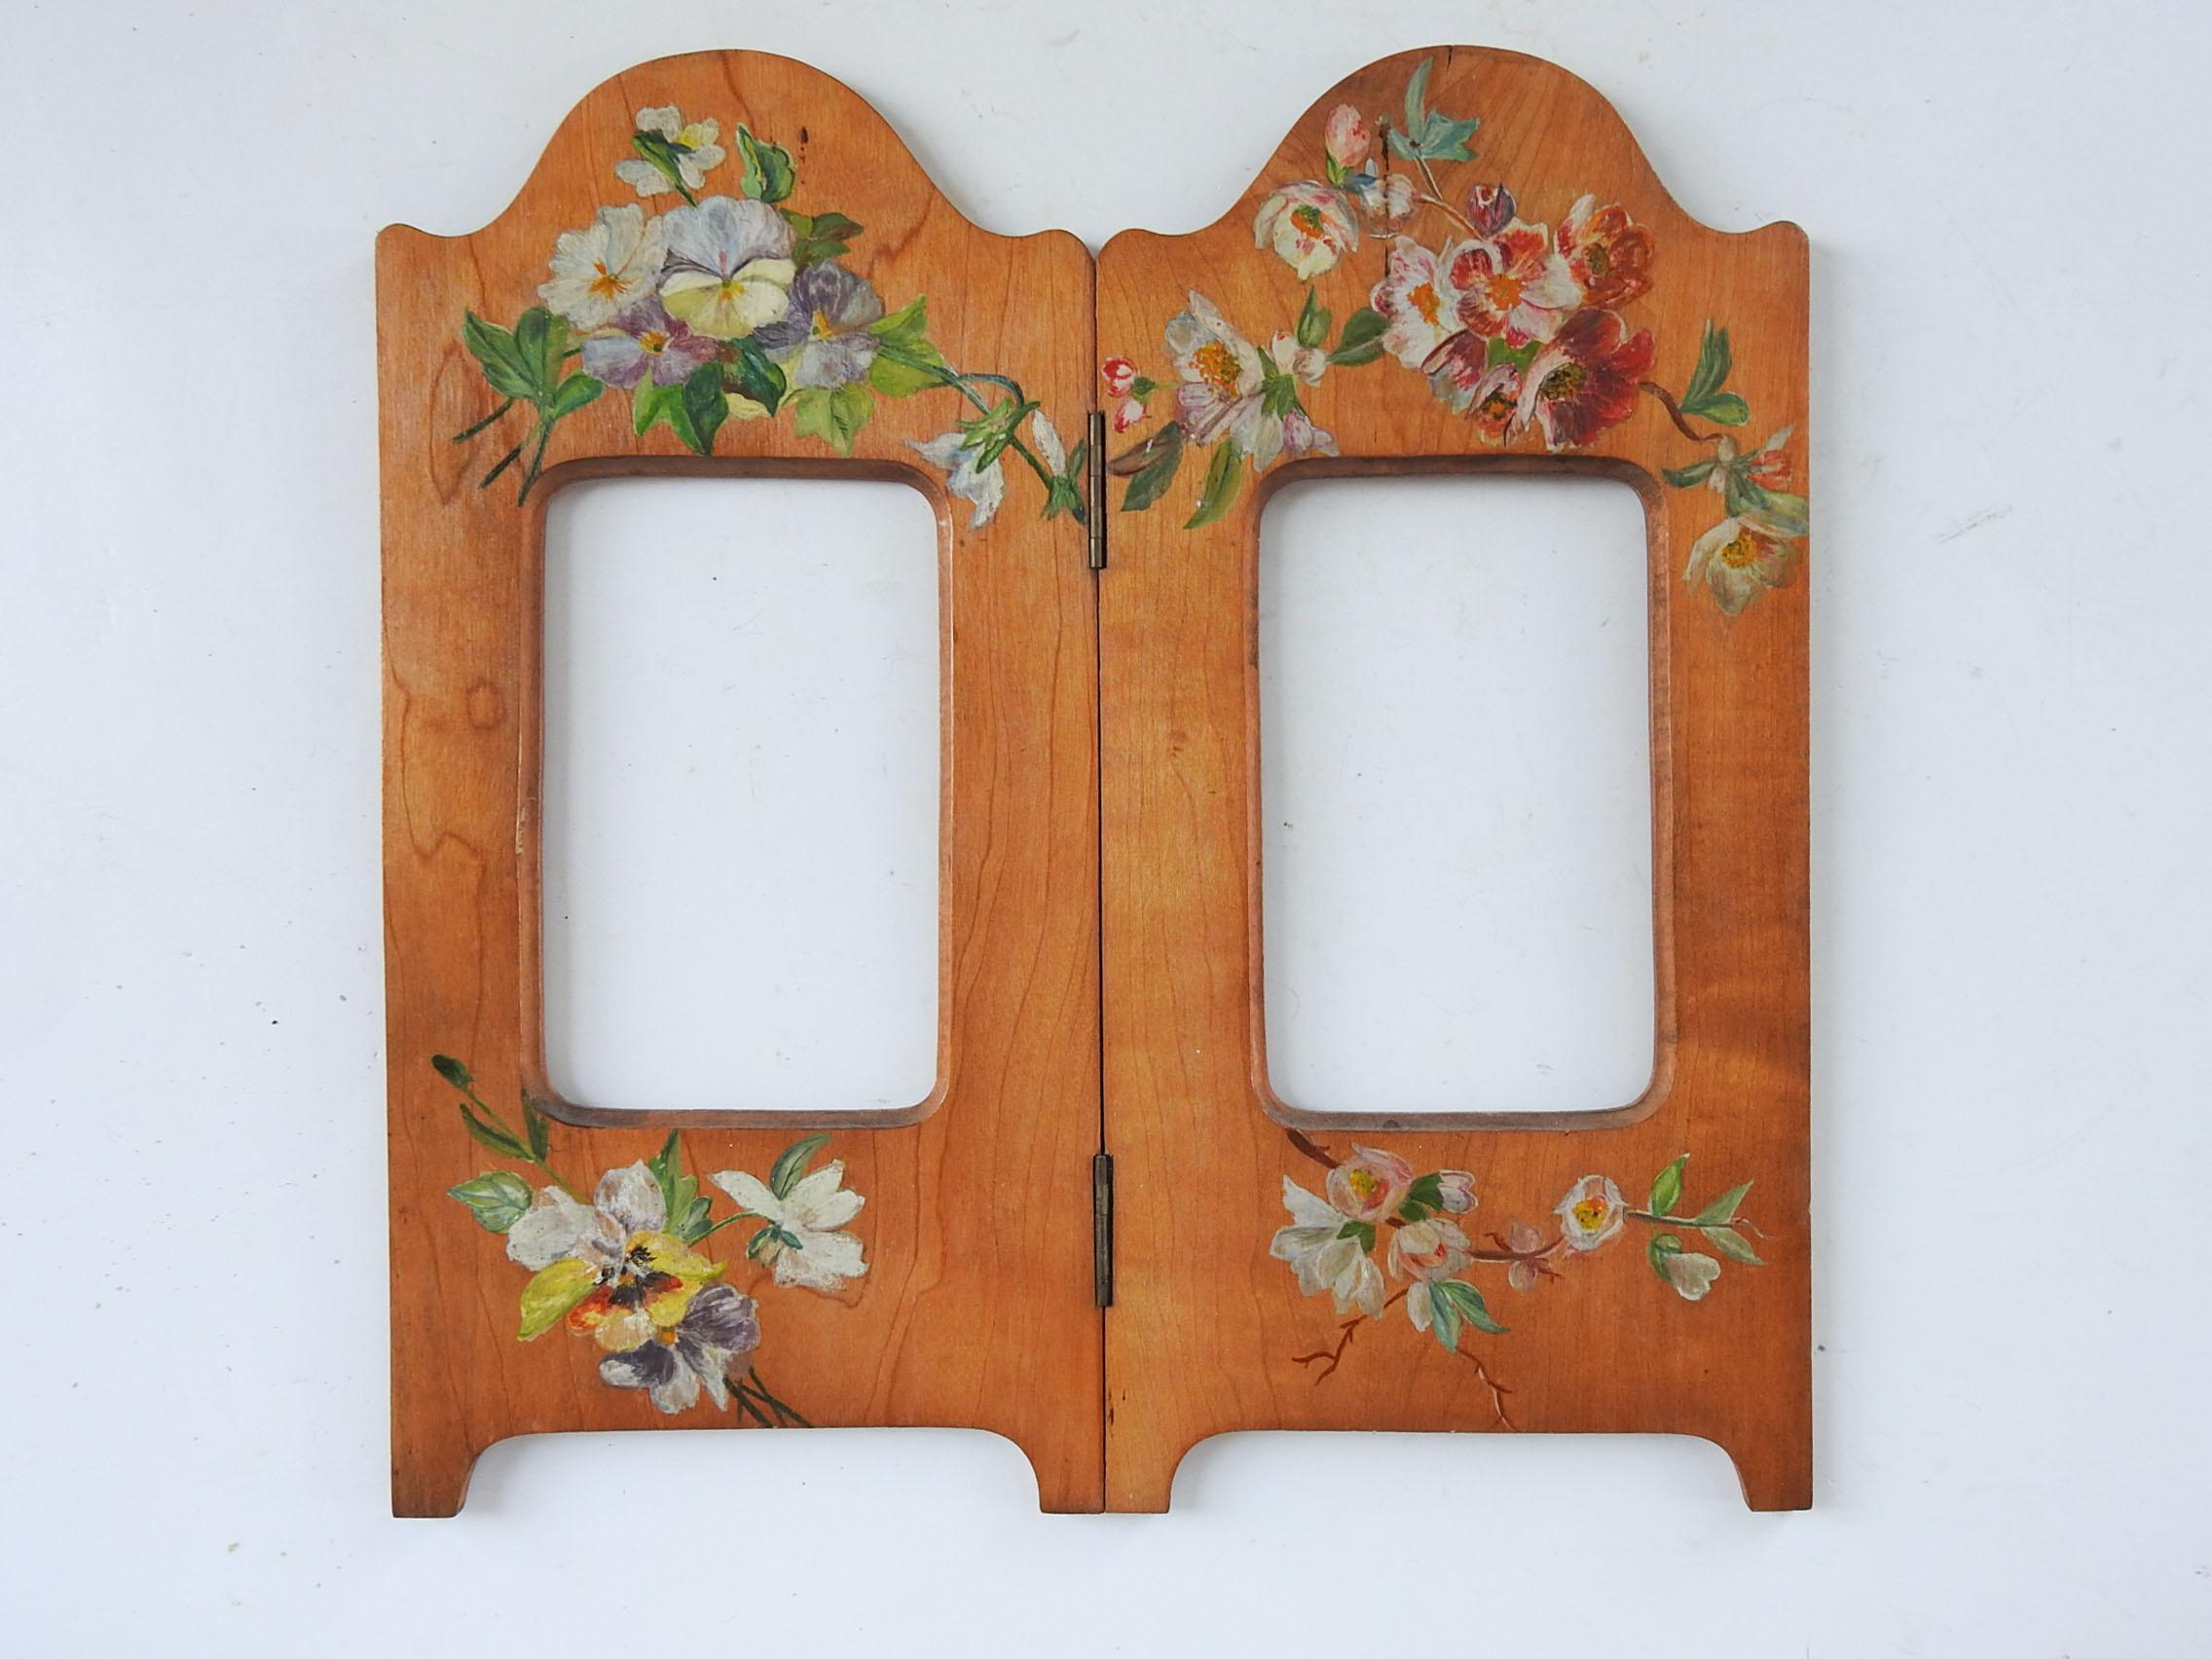 Antiker Doppel-Bilderrahmen aus Holz mit handgemalten Blumen.  Stiefmütterchen, Primeln und Apfelblüten.  Die Öffnungen sind 3,5